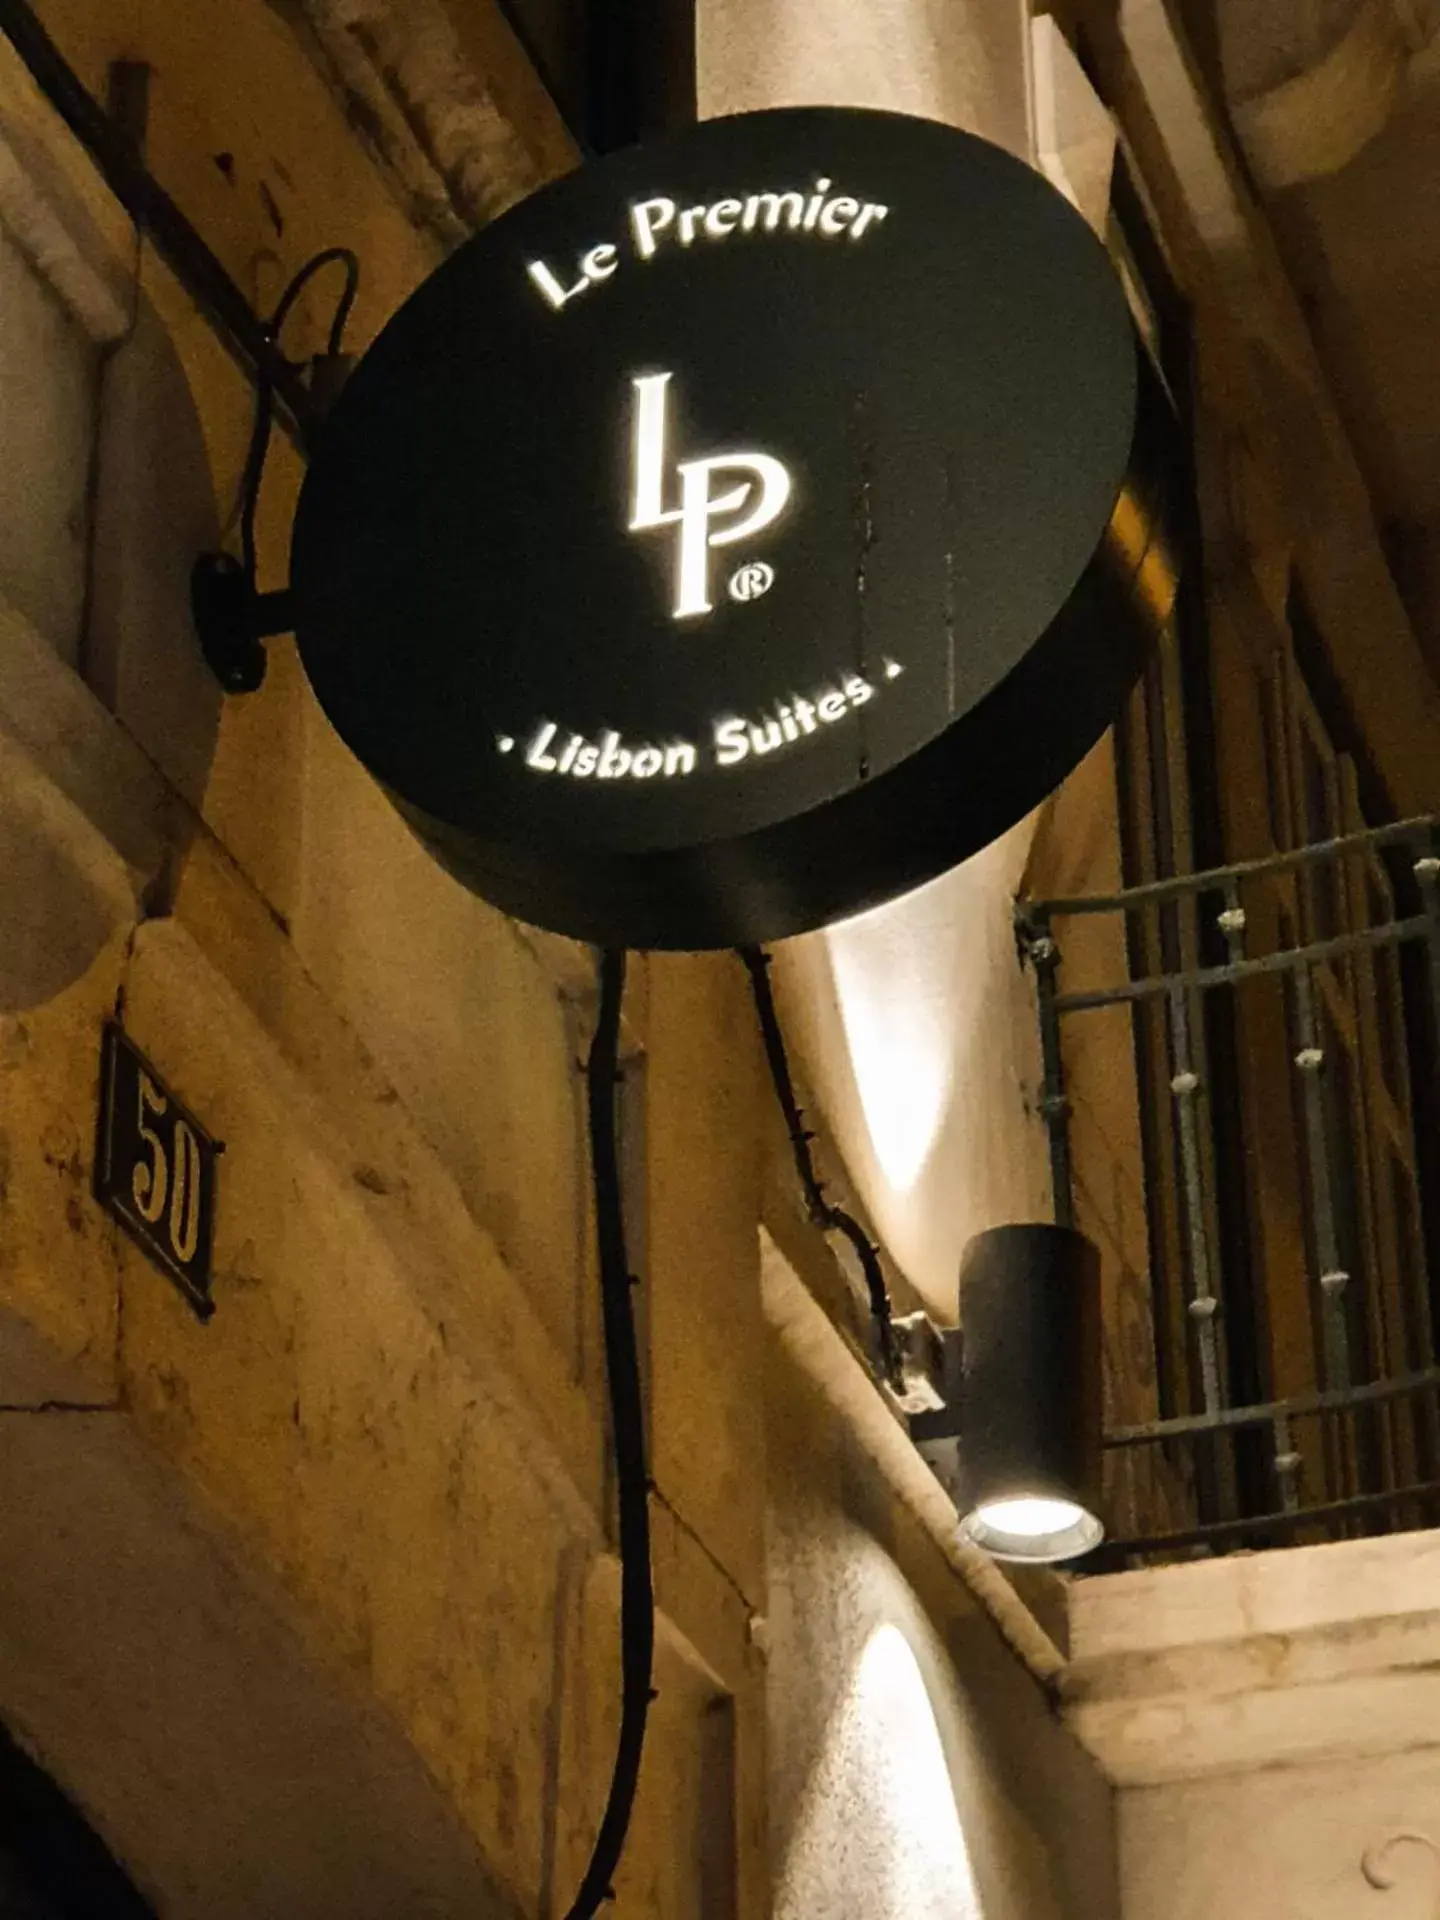 Property logo or sign in Le Premier Lisbon Suites